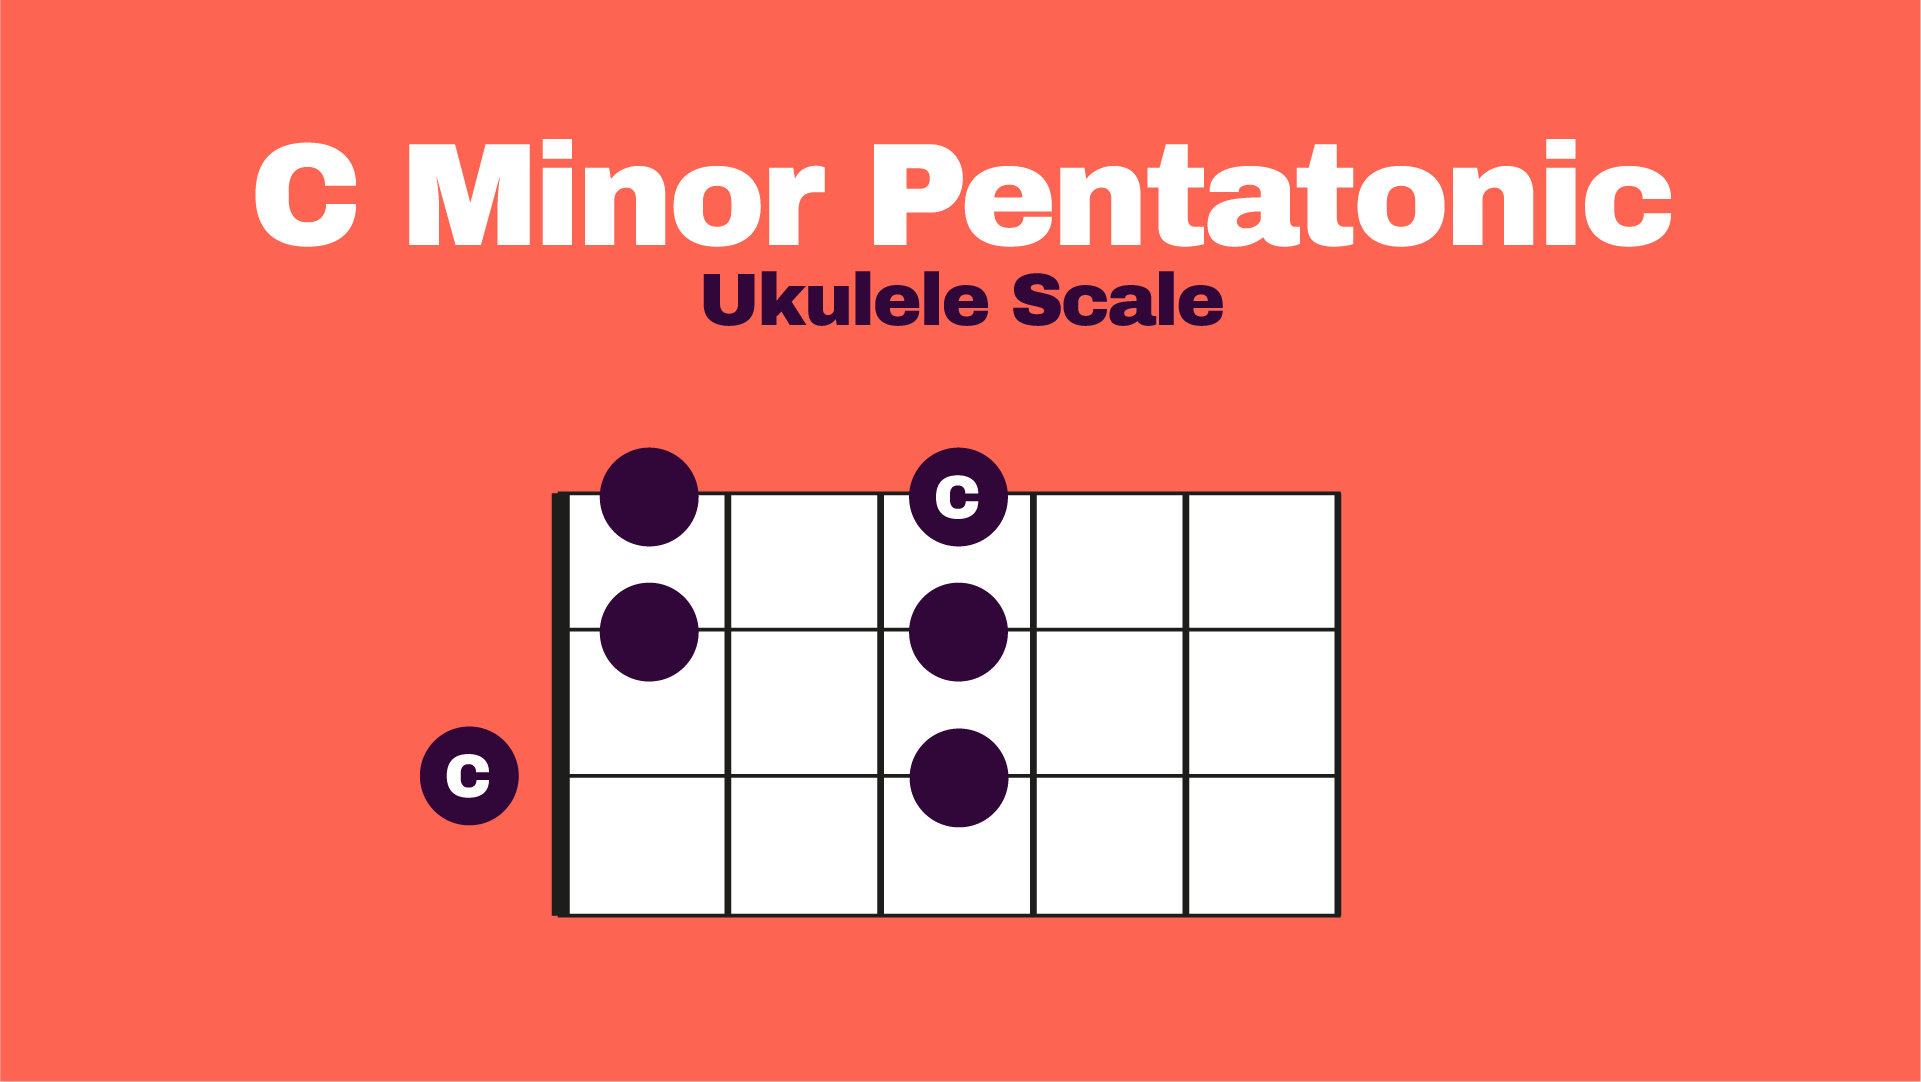 C minor Pentatonic Ukulele Fretboard Diagram